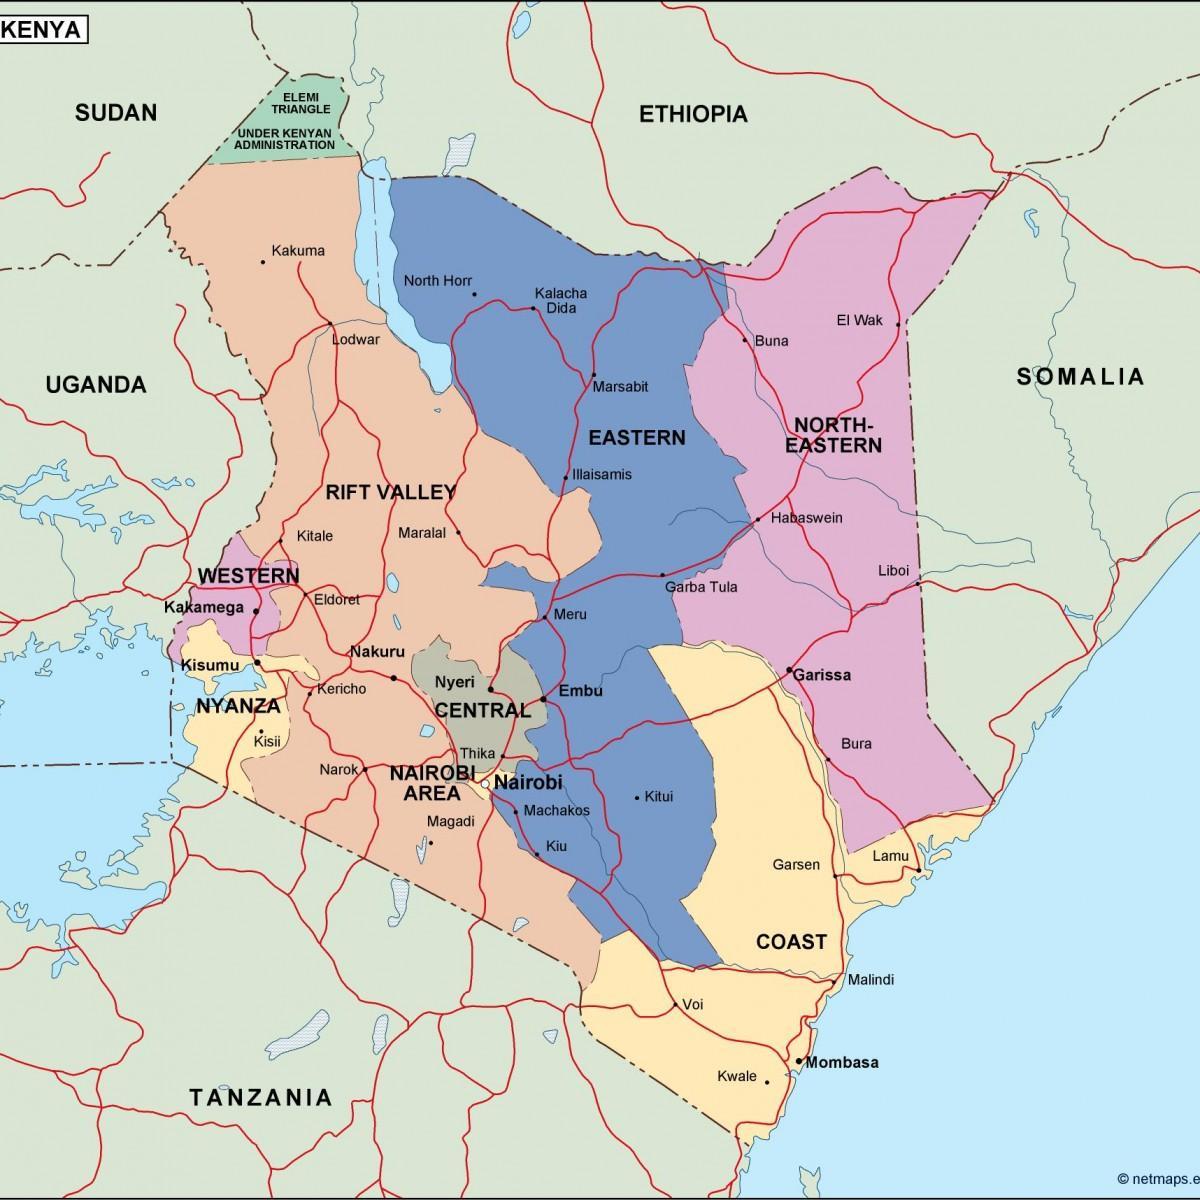 kort over politiske kort i Kenya